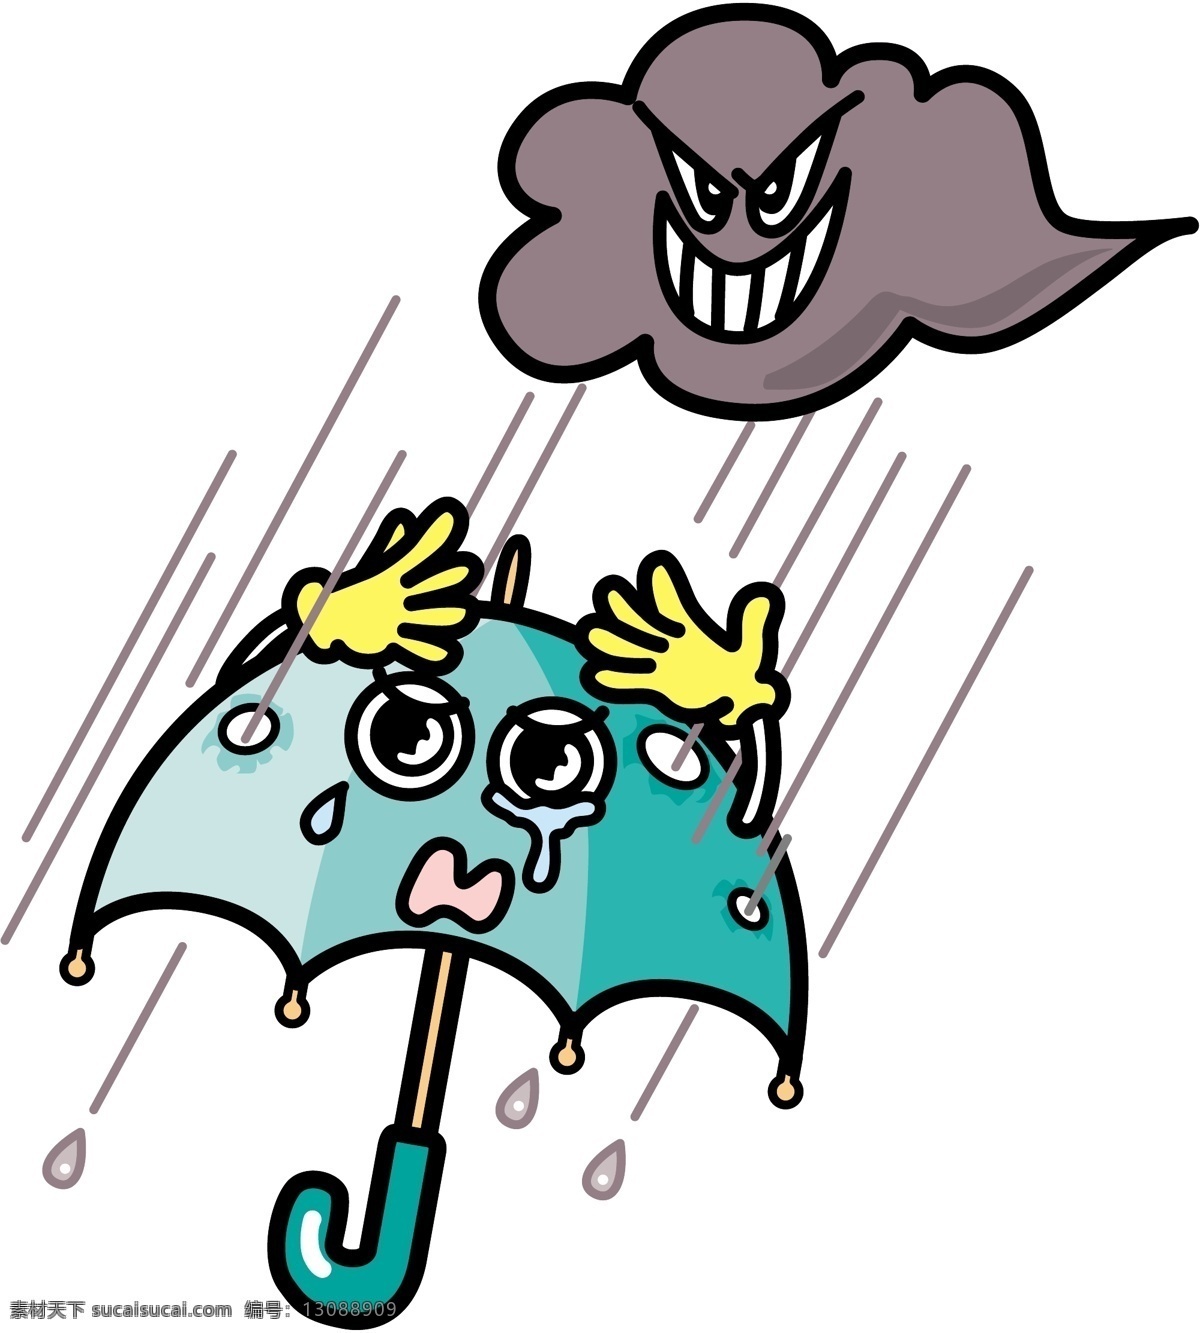 插画免费下载 插画 卡通 人物 社会 雨天打伞 矢量图 其他矢量图